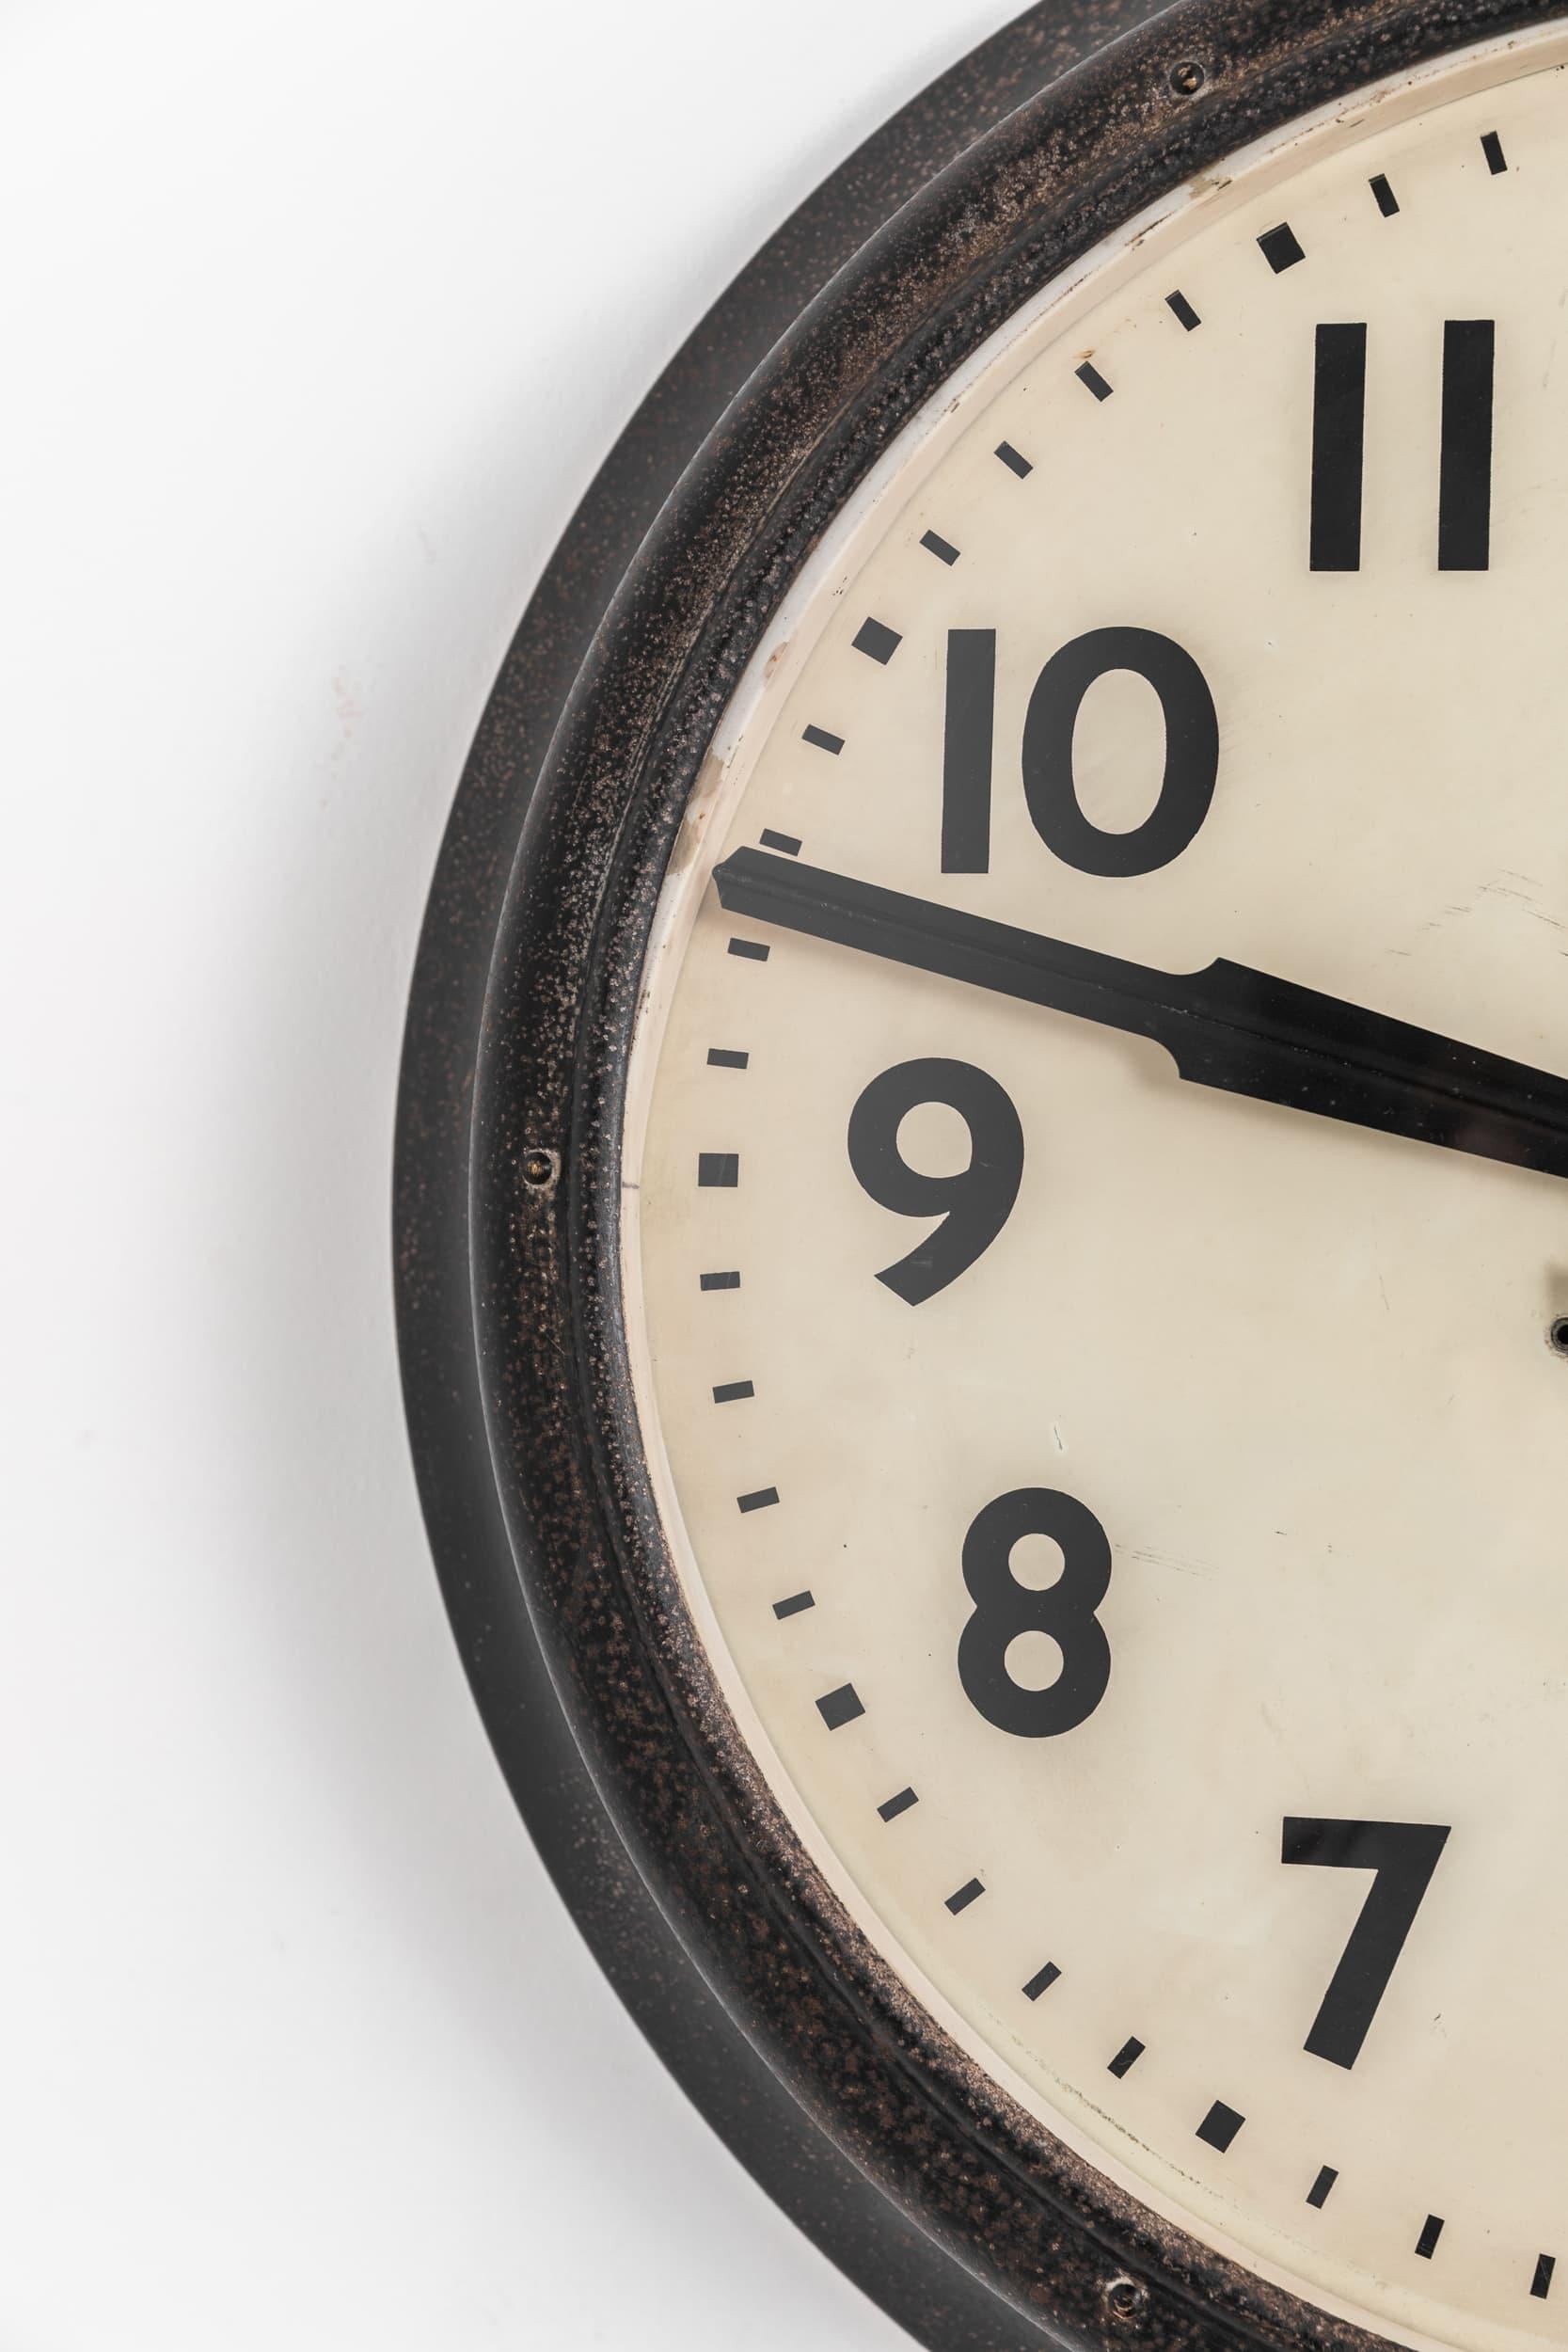 Wunderschönes Exemplar der kultigen Wanduhr von Smiths English Clock Systems, um 1950

Der Wagen befindet sich in absolutem Originalzustand, wobei die schwarze Werkslackierung beibehalten wurde, die eine schöne Patina entwickelt hat. Smith Sectric